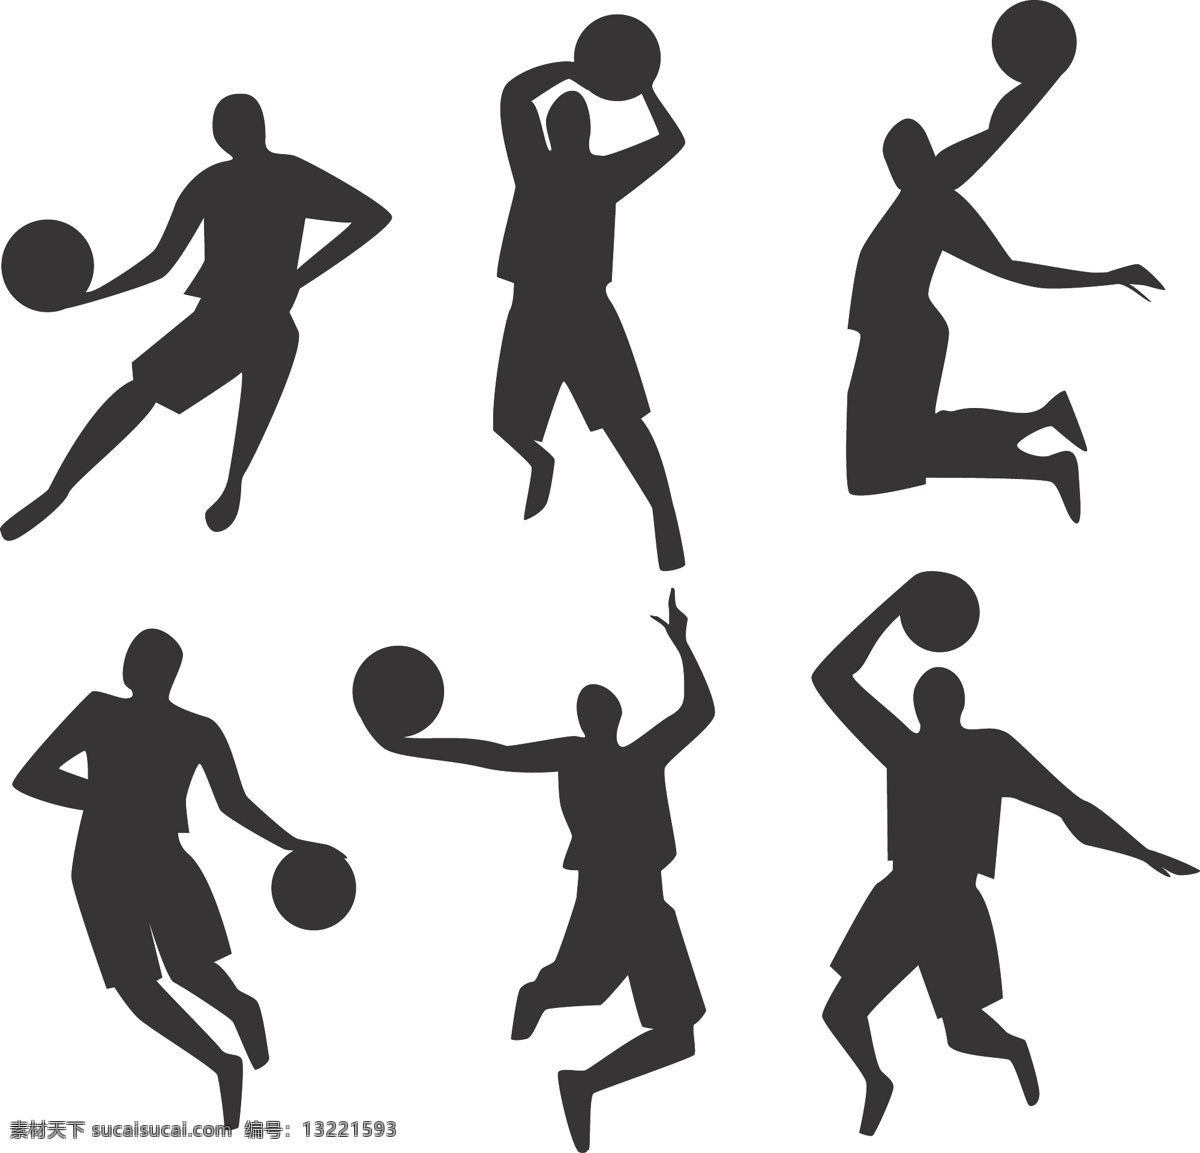 篮球员剪影 篮球员 剪影 运动剪影 运动 打篮球 篮球选手剪影 篮球选手 共享设计矢量 人物图库 职业人物